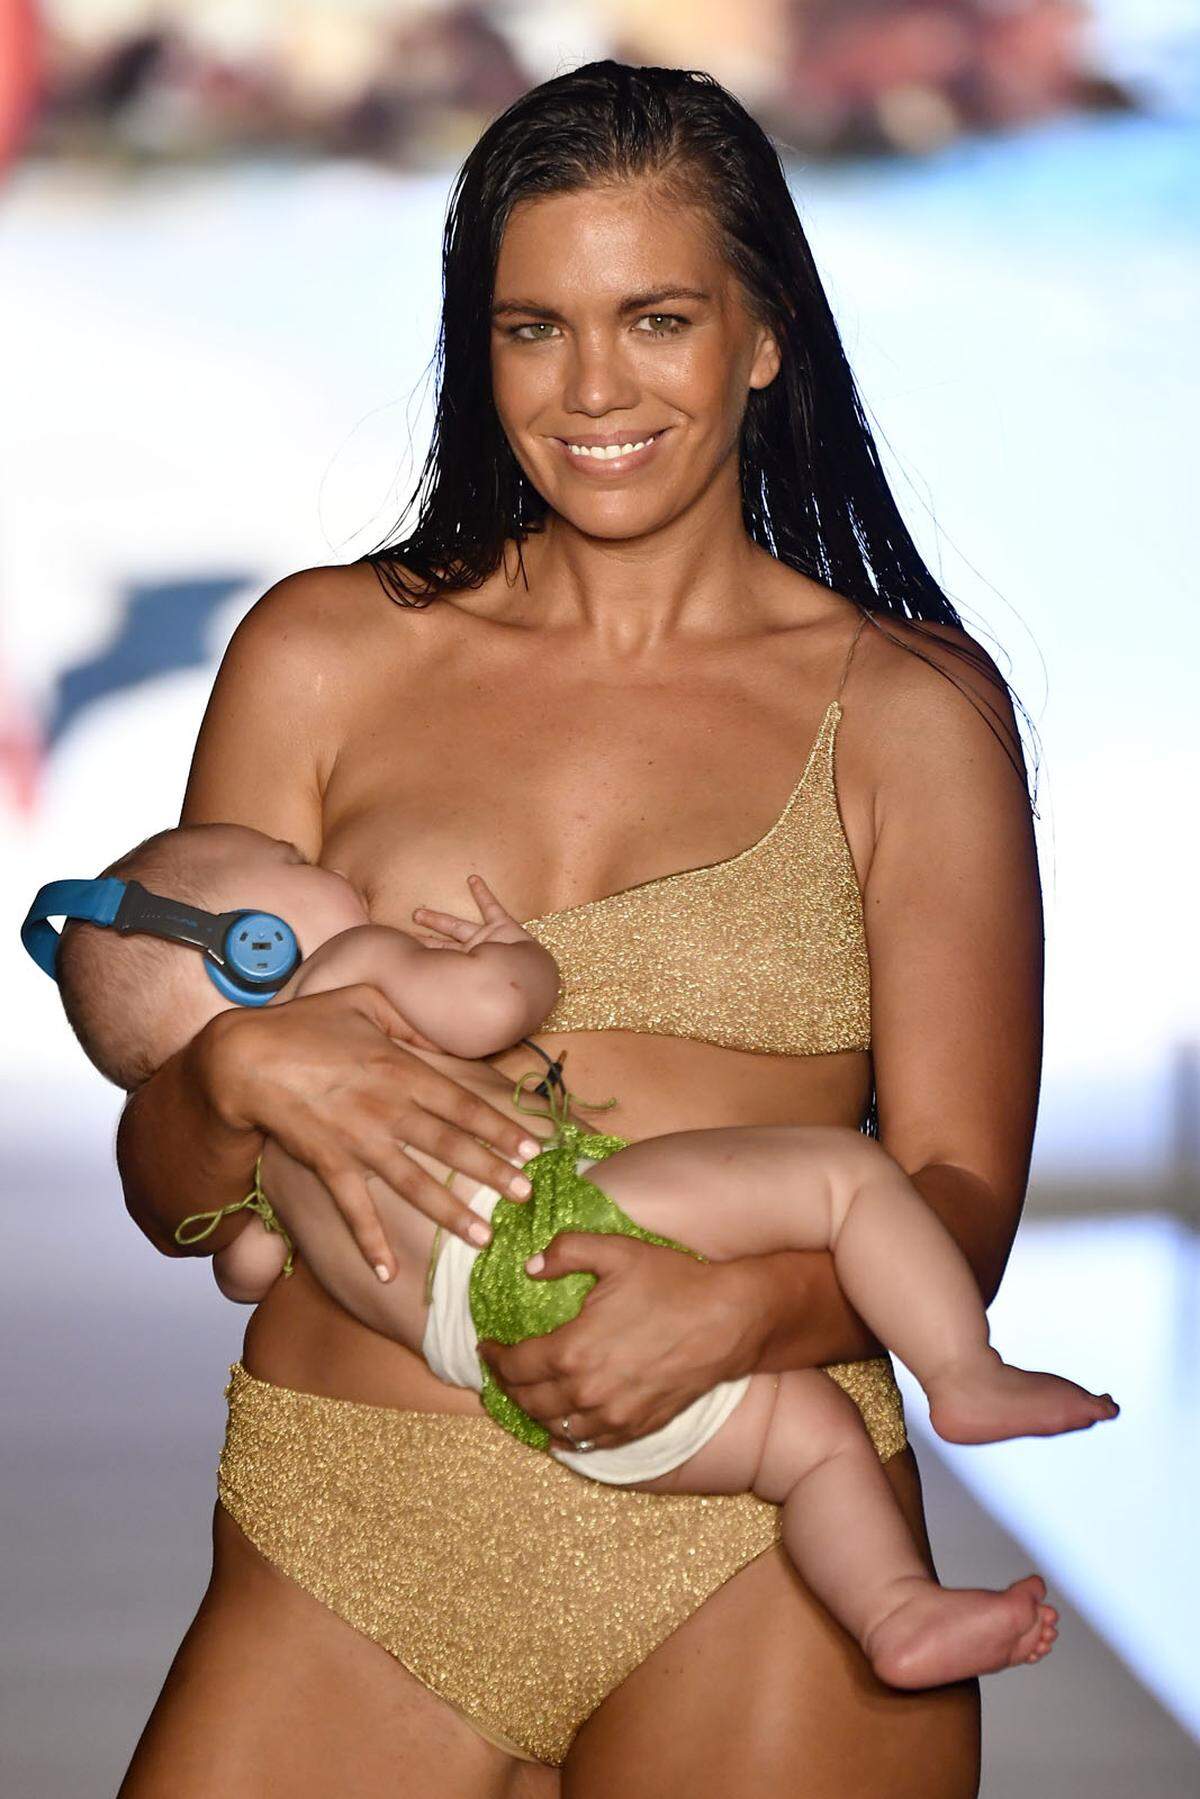 Bikins und Bademode - dabei geht es bei der Miami Swim Fashion Week im Allgemeinen. Im Zuge der Sports Illustrated Swimsuit Show zeigte sich jetzt aber ein doch recht ungewöhnliches Bild. Denn Model Mara Martin stillte auf dem Catwalk ihre fünf Monate alte Tochter.